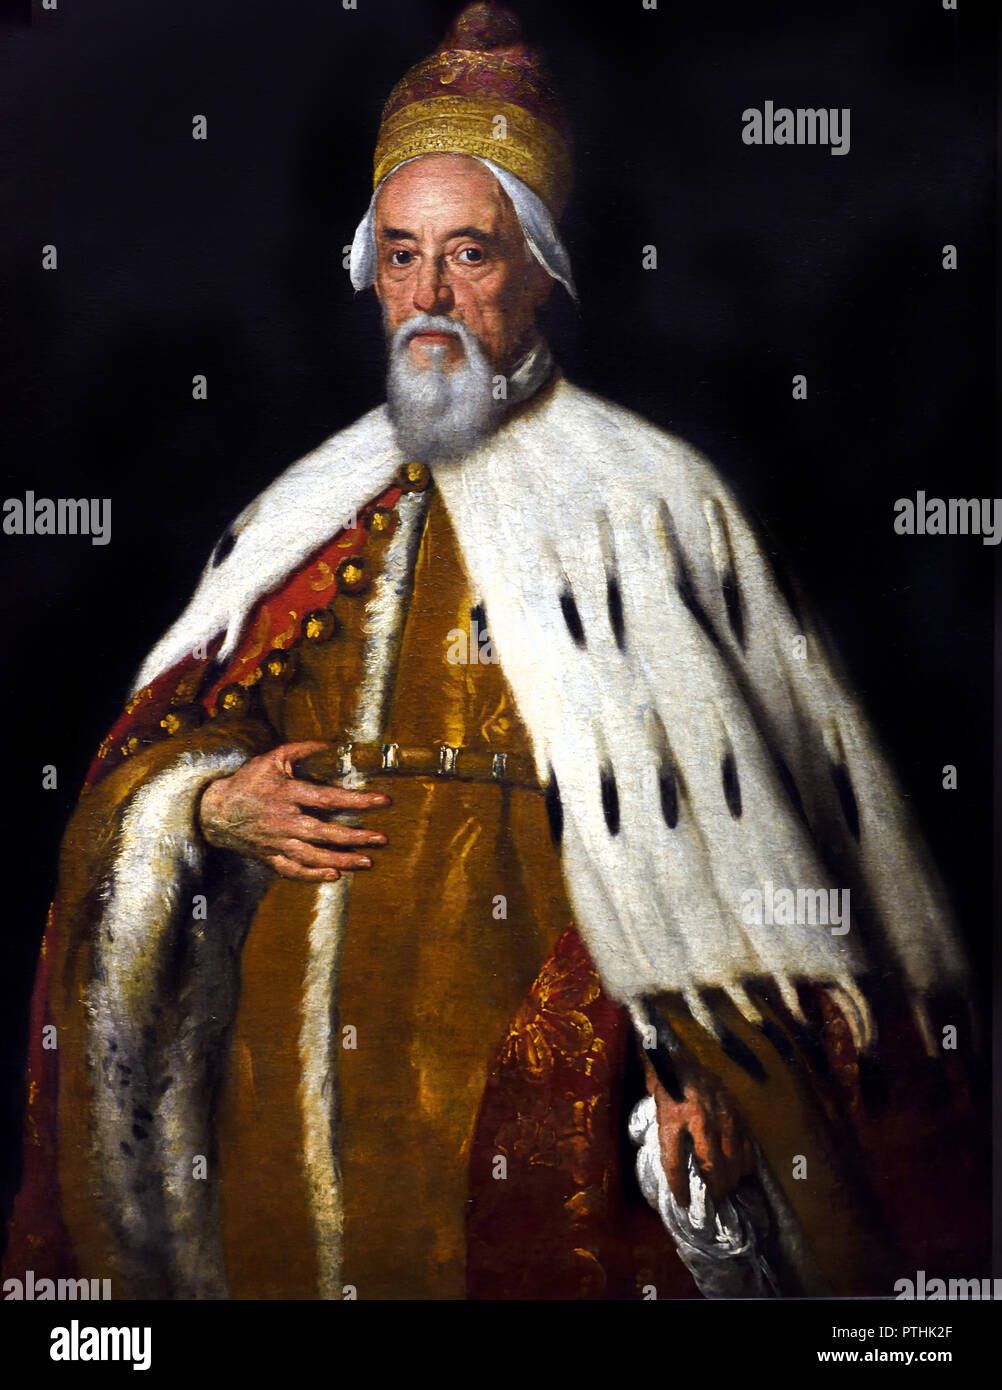 Duque Francesco Erizzo 1631 Bernardo Strozzi 1581 - 1644 Italia ( italiano Francesco Erizzo (Venecia, 1566 - Venecia, 1646) fue el 98º Dogo de Venecia, reinando desde su elección el 10 de abril de 1631, hasta su muerte, 15 años más tarde. ) Italia, Italiano. Foto de stock